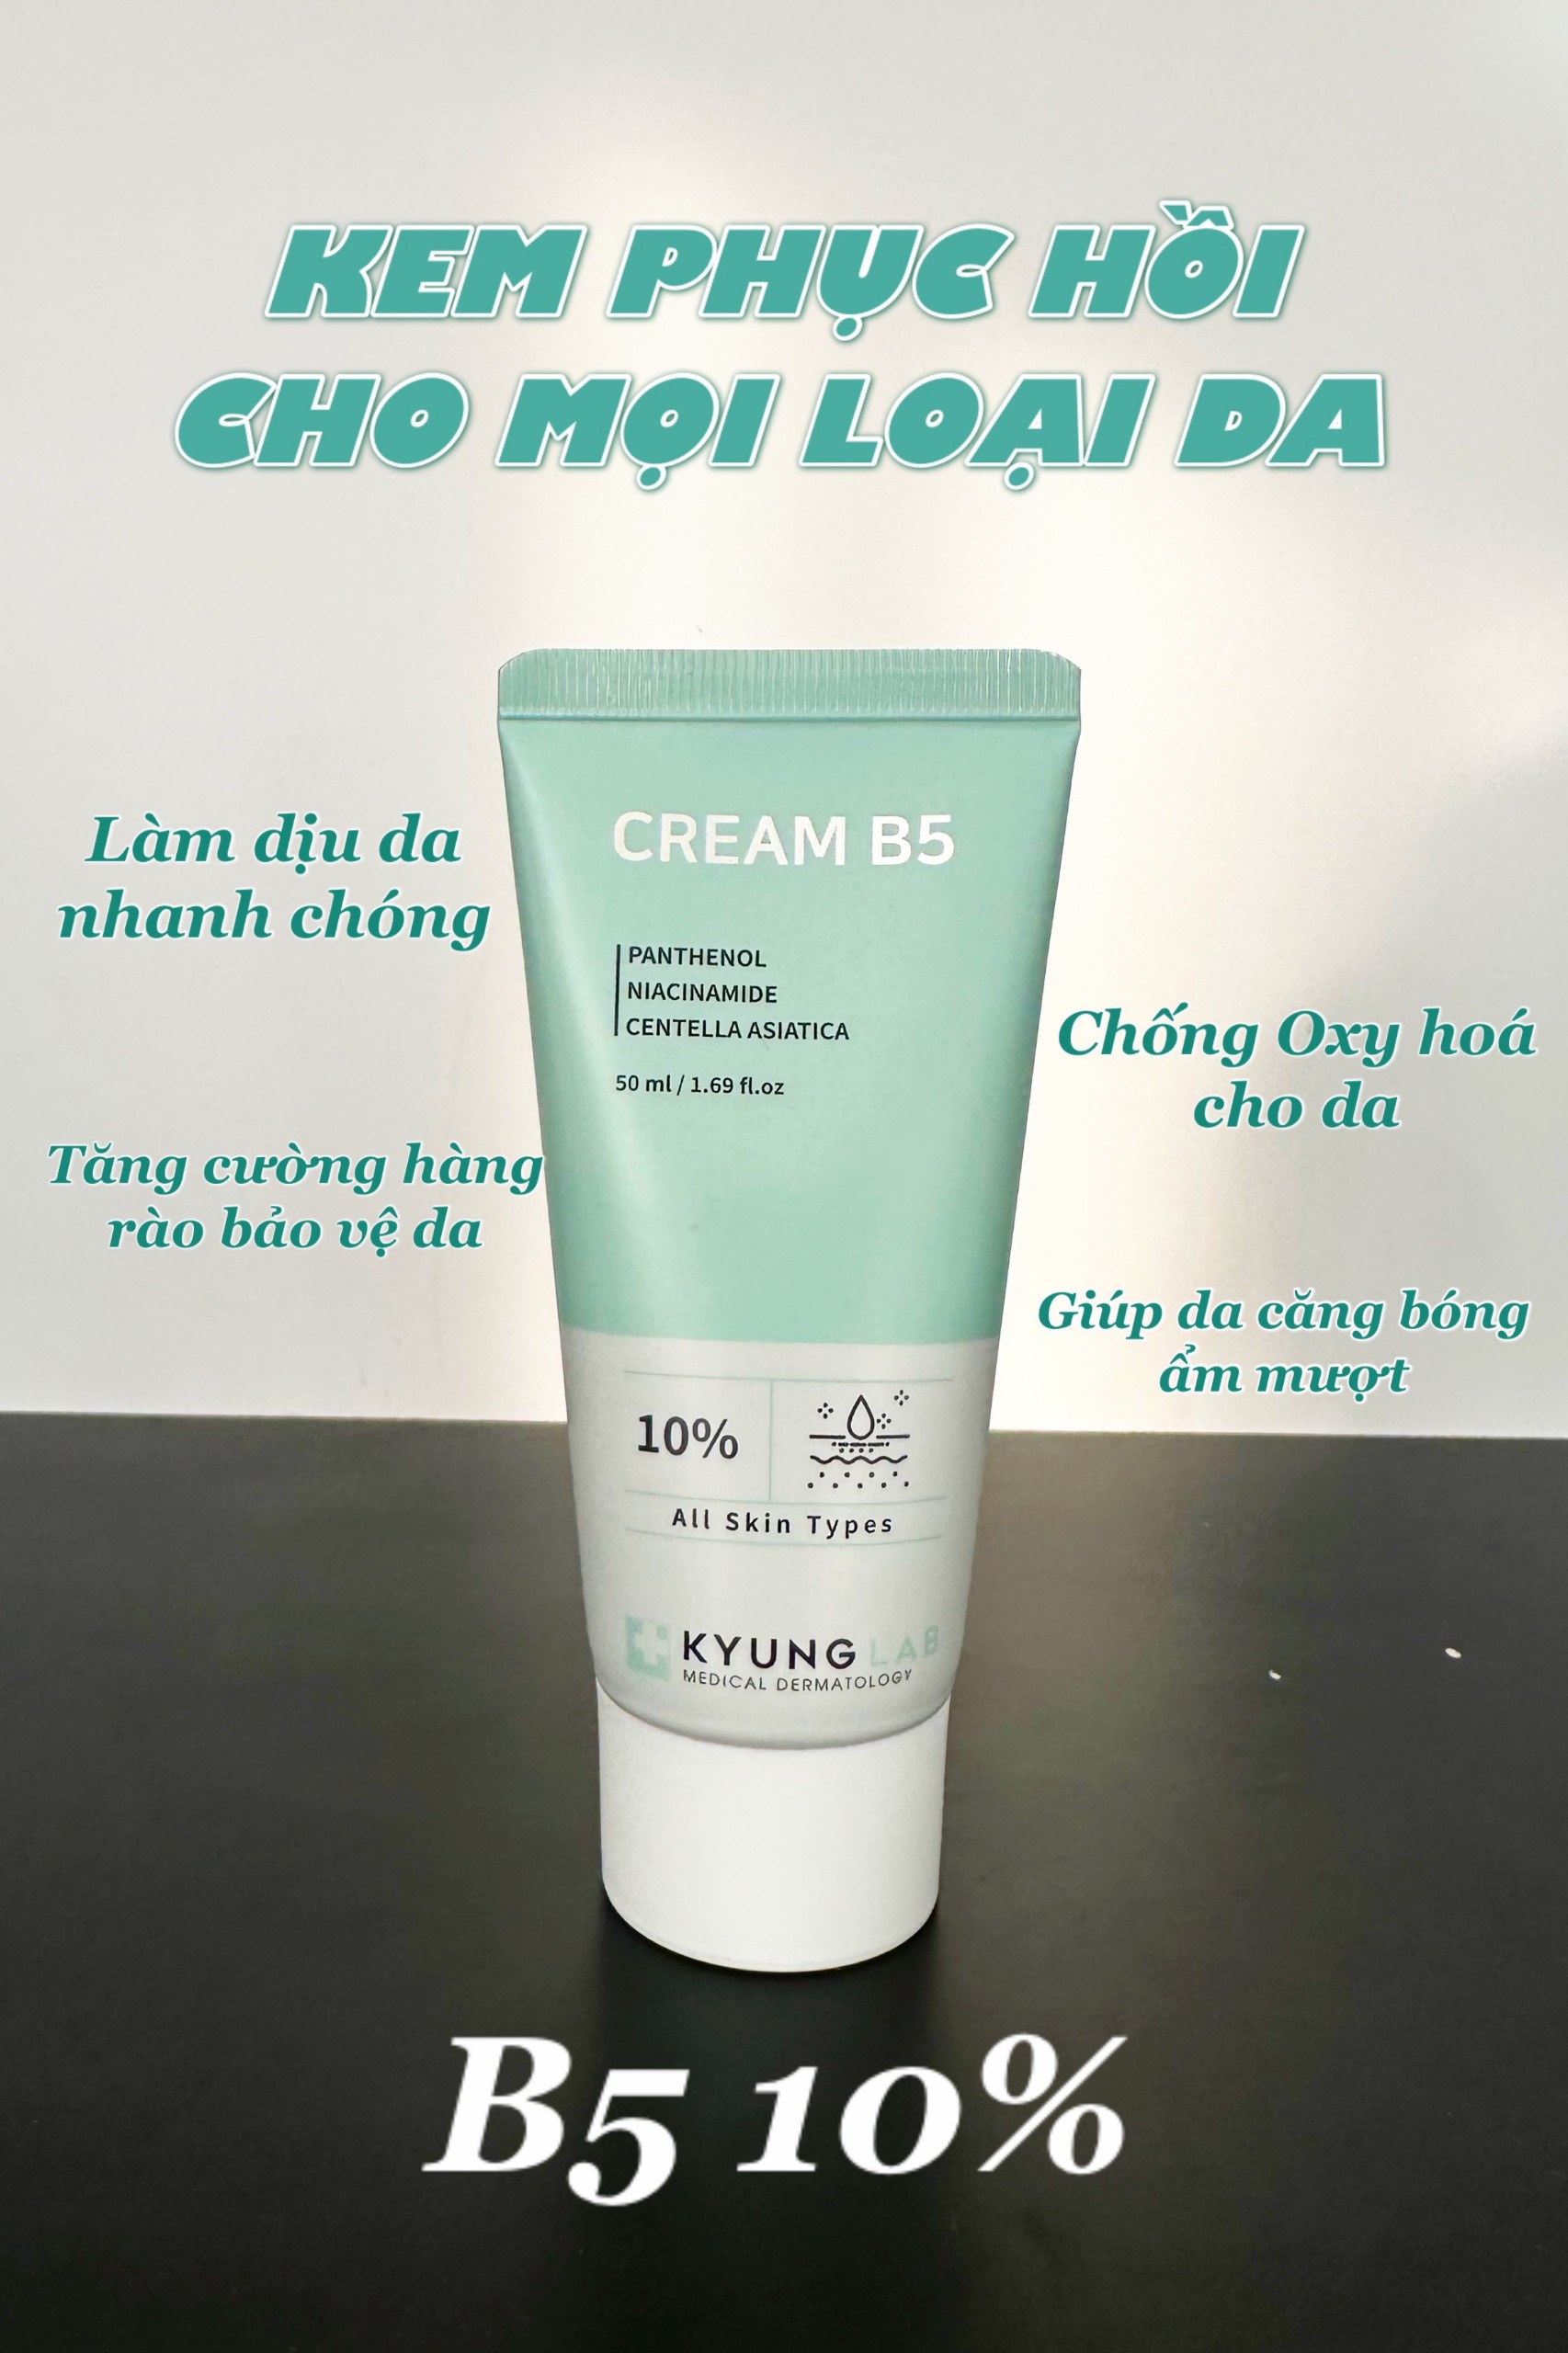 Dưỡng ẩm phục hồi da Cream B5 Kyunglab (C/50ML)